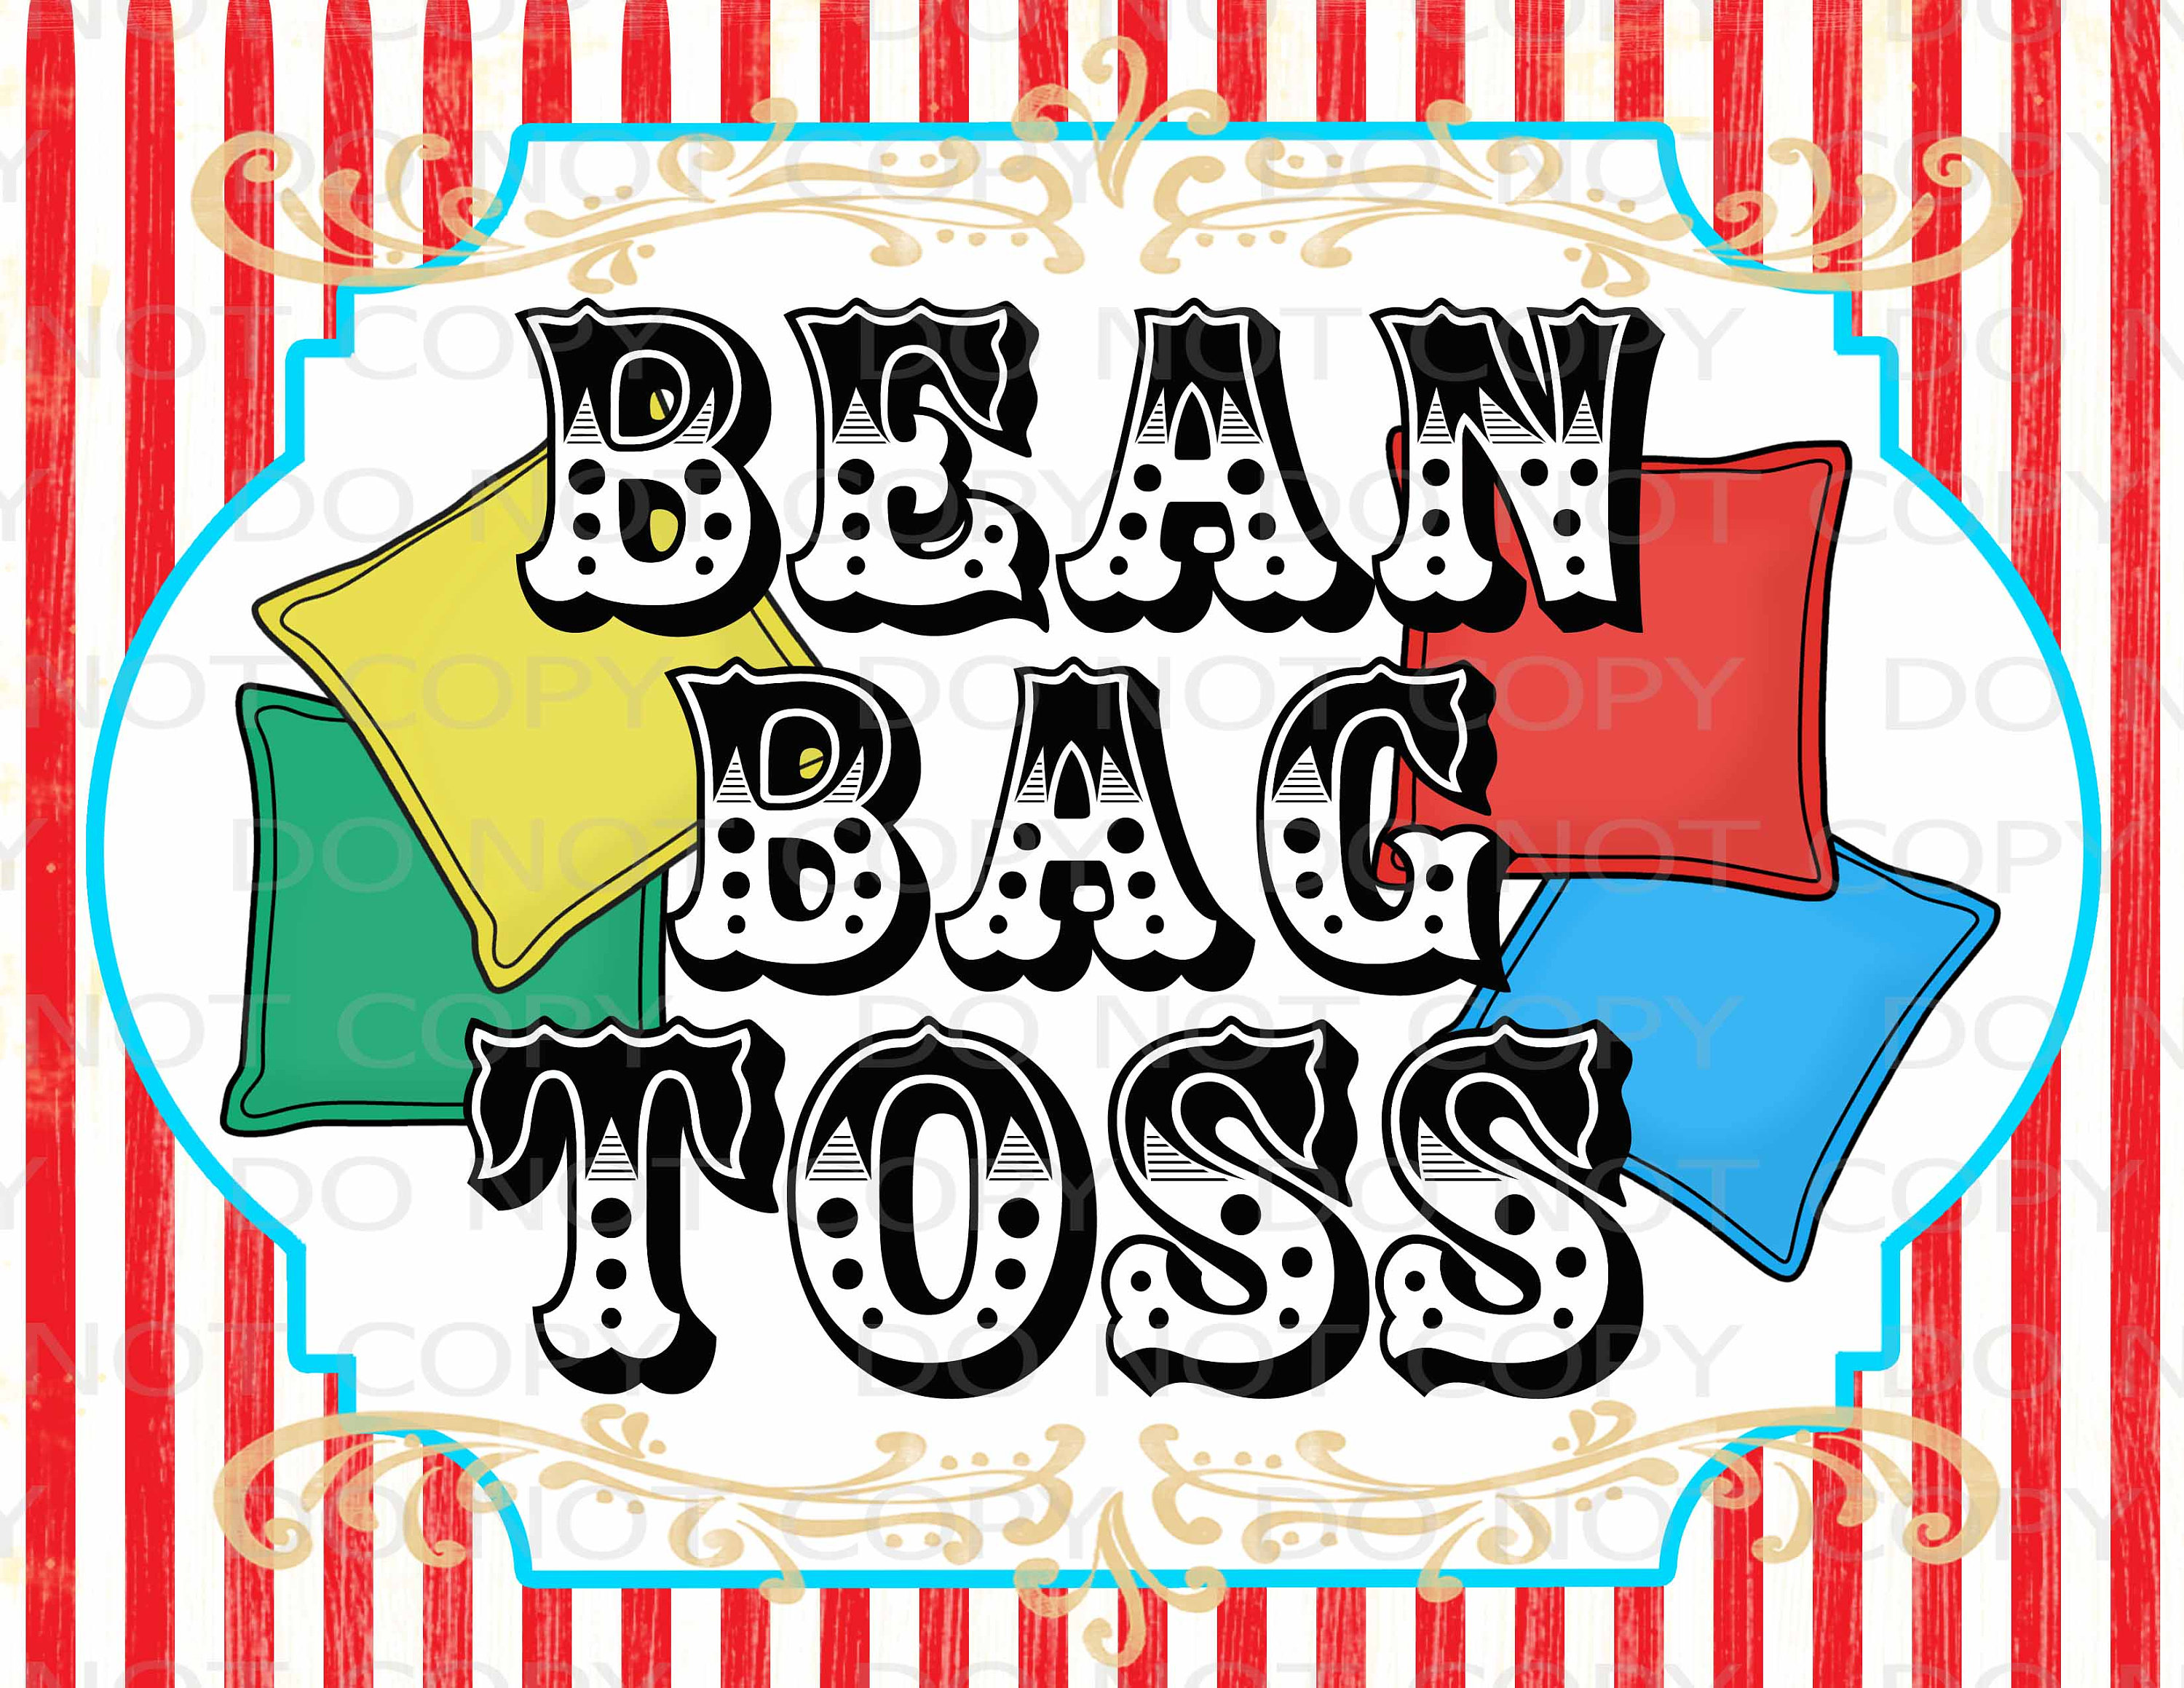 Share more than 69 bean bag toss carnival game best - esthdonghoadian